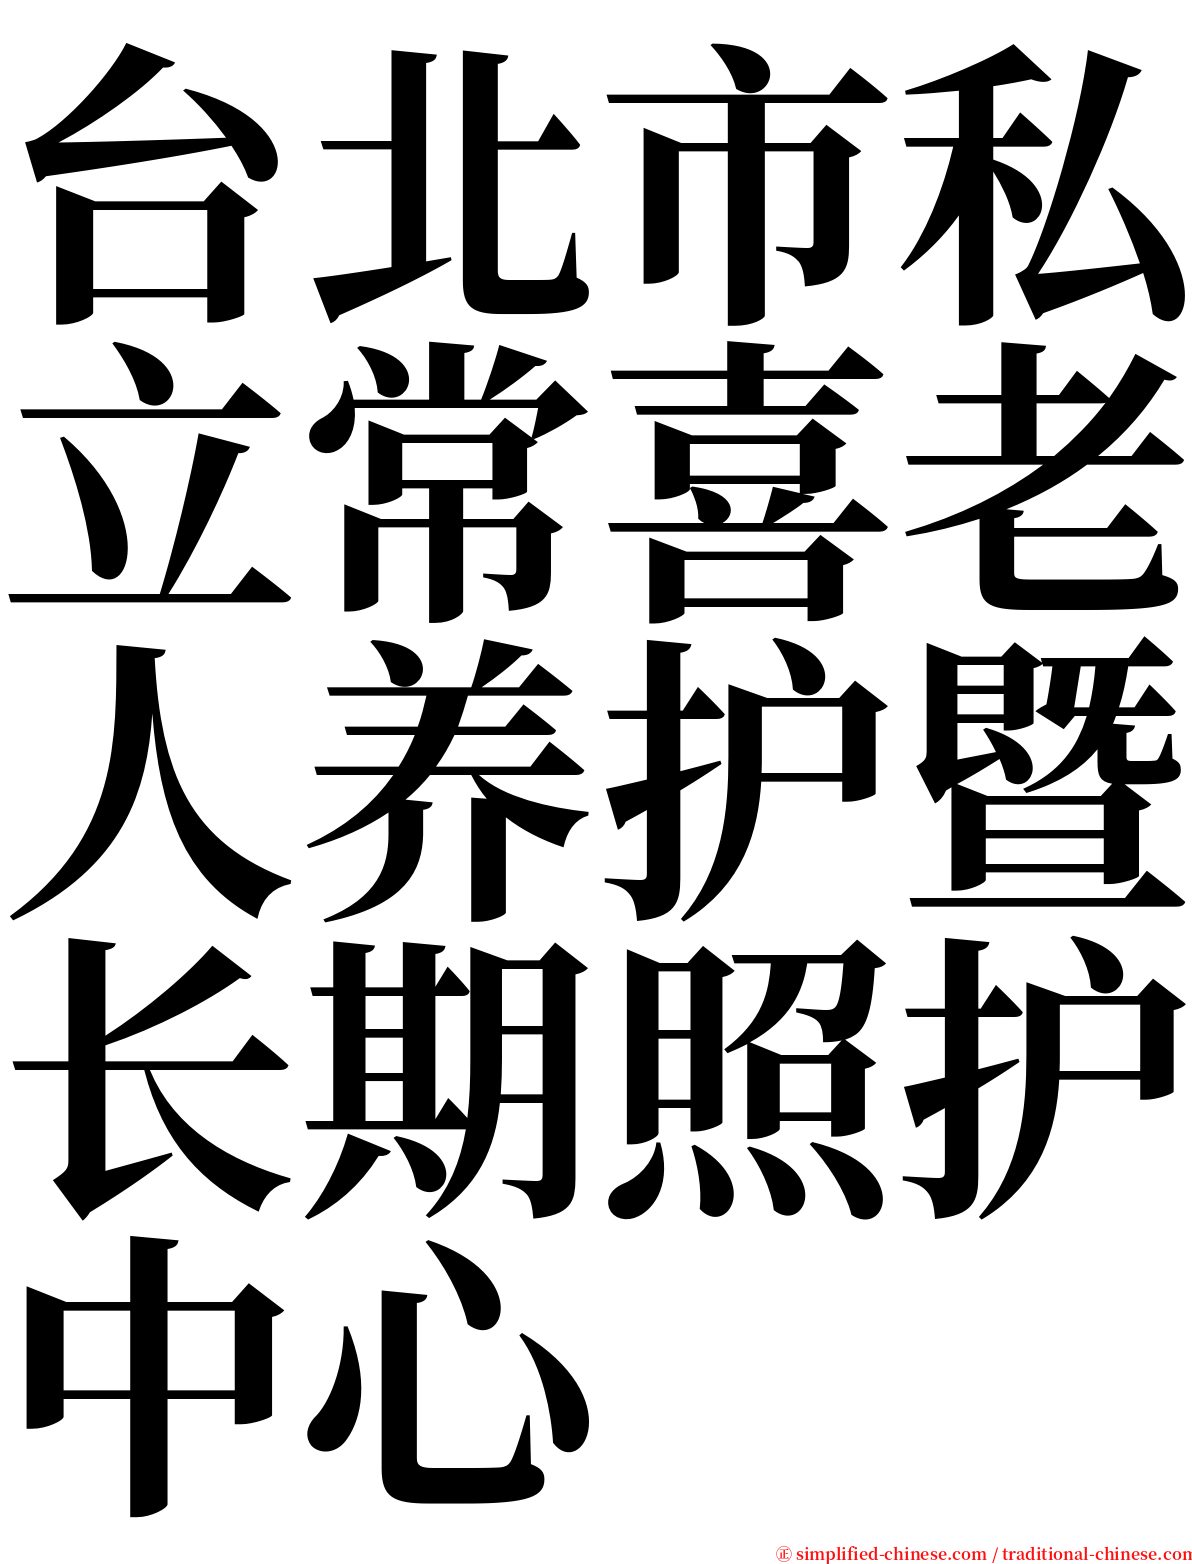 台北市私立常喜老人养护暨长期照护中心 serif font